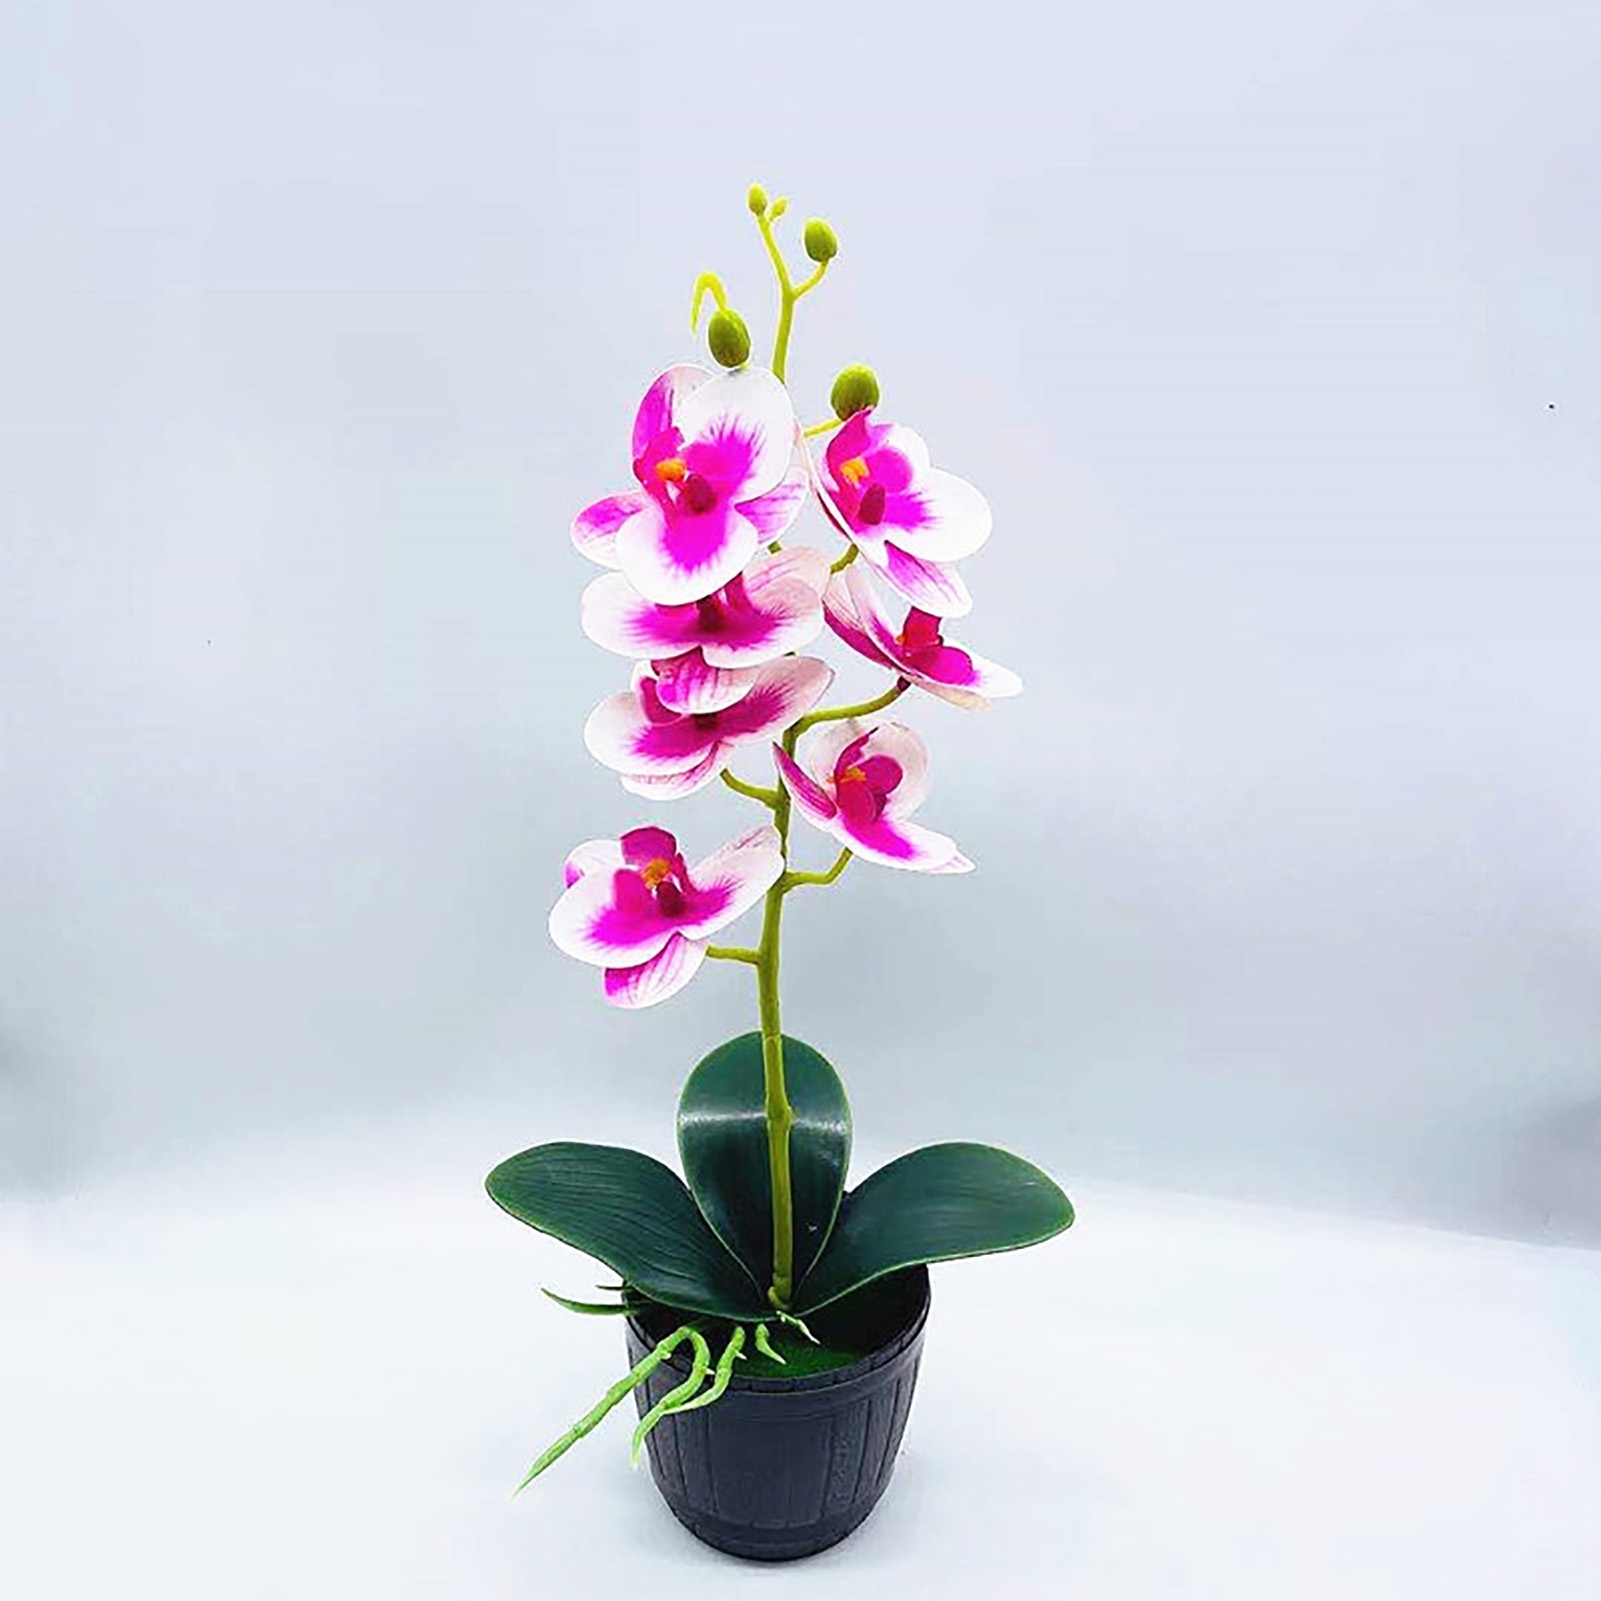 Кашпо для орхидей декоративное. Орхидея в горшке в подарок. Орхидея в горшке белая с фиолетом. Орхидея в кашпо китайском. Орхидеи в горшках новосибирск